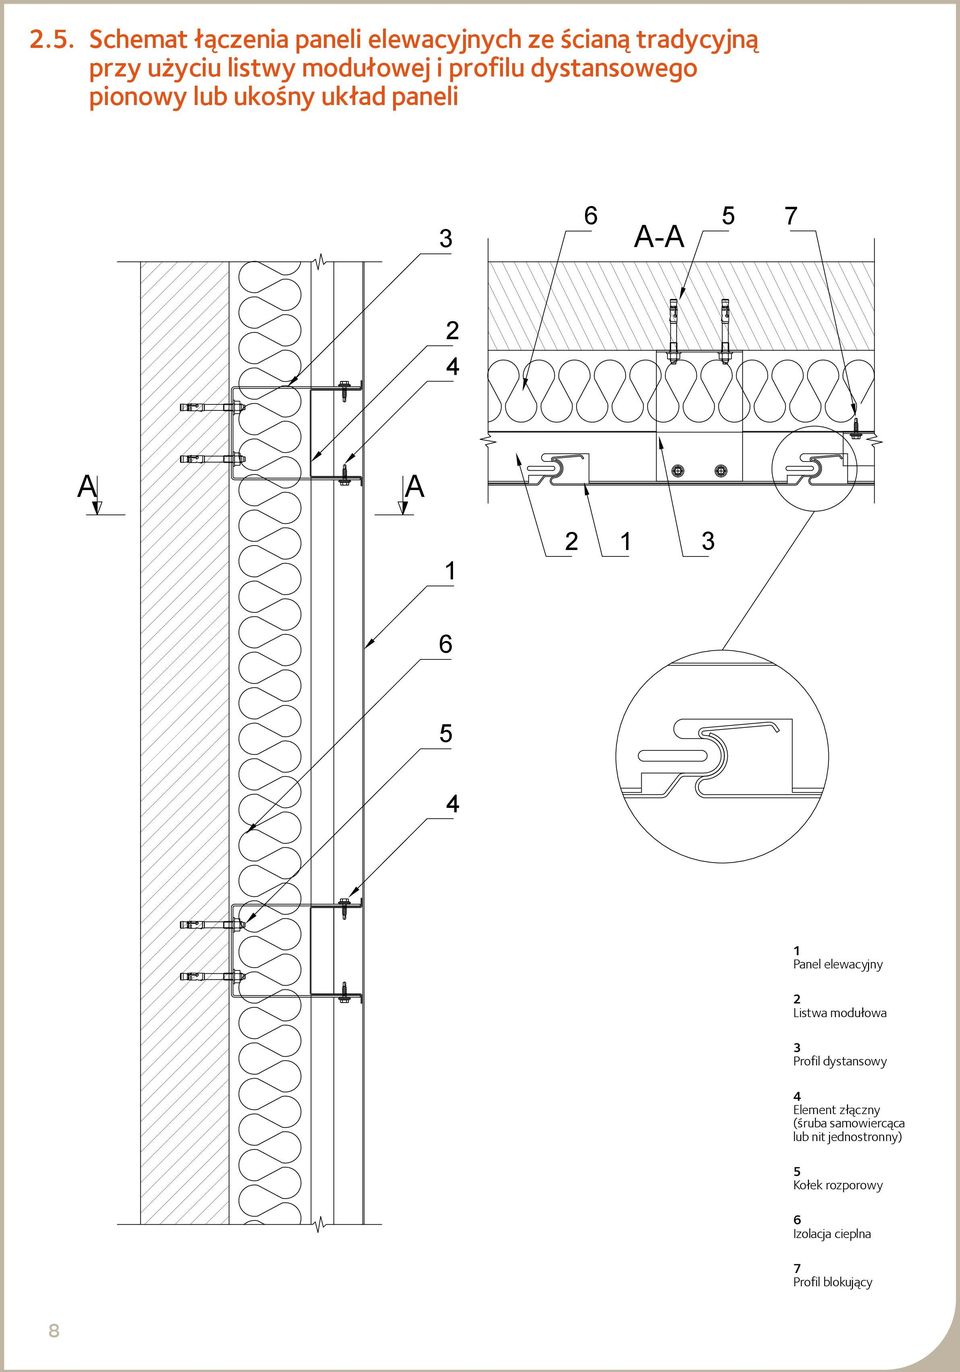 A Panel elewacyjny Listwa modułowa Profil dystansowy Element złączny (śruba